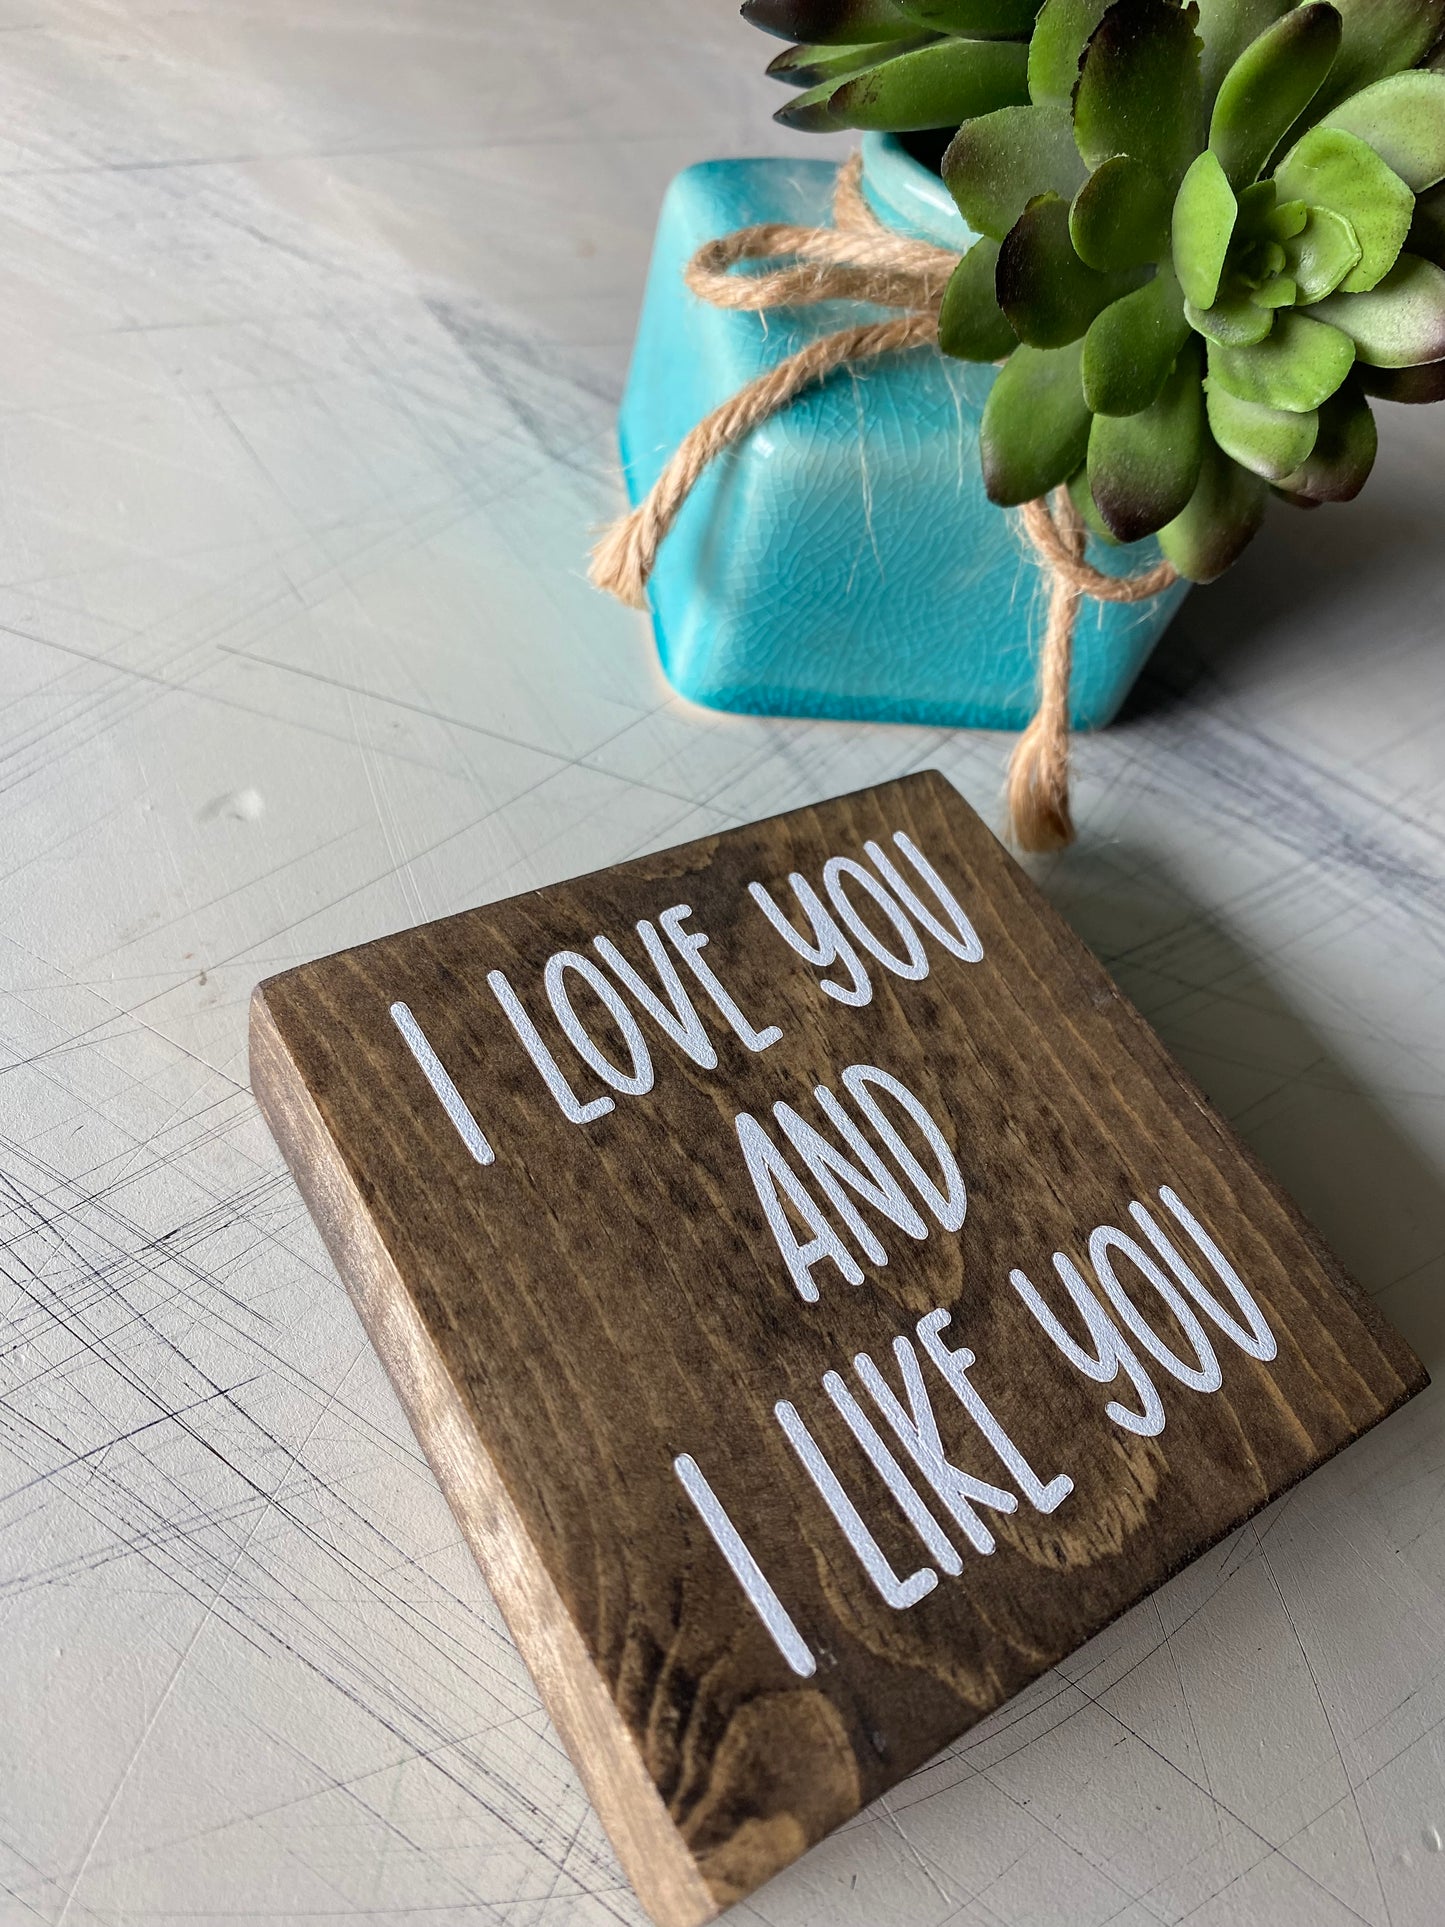 I love you and I like you - Novotny Designs handmade mini wood sign